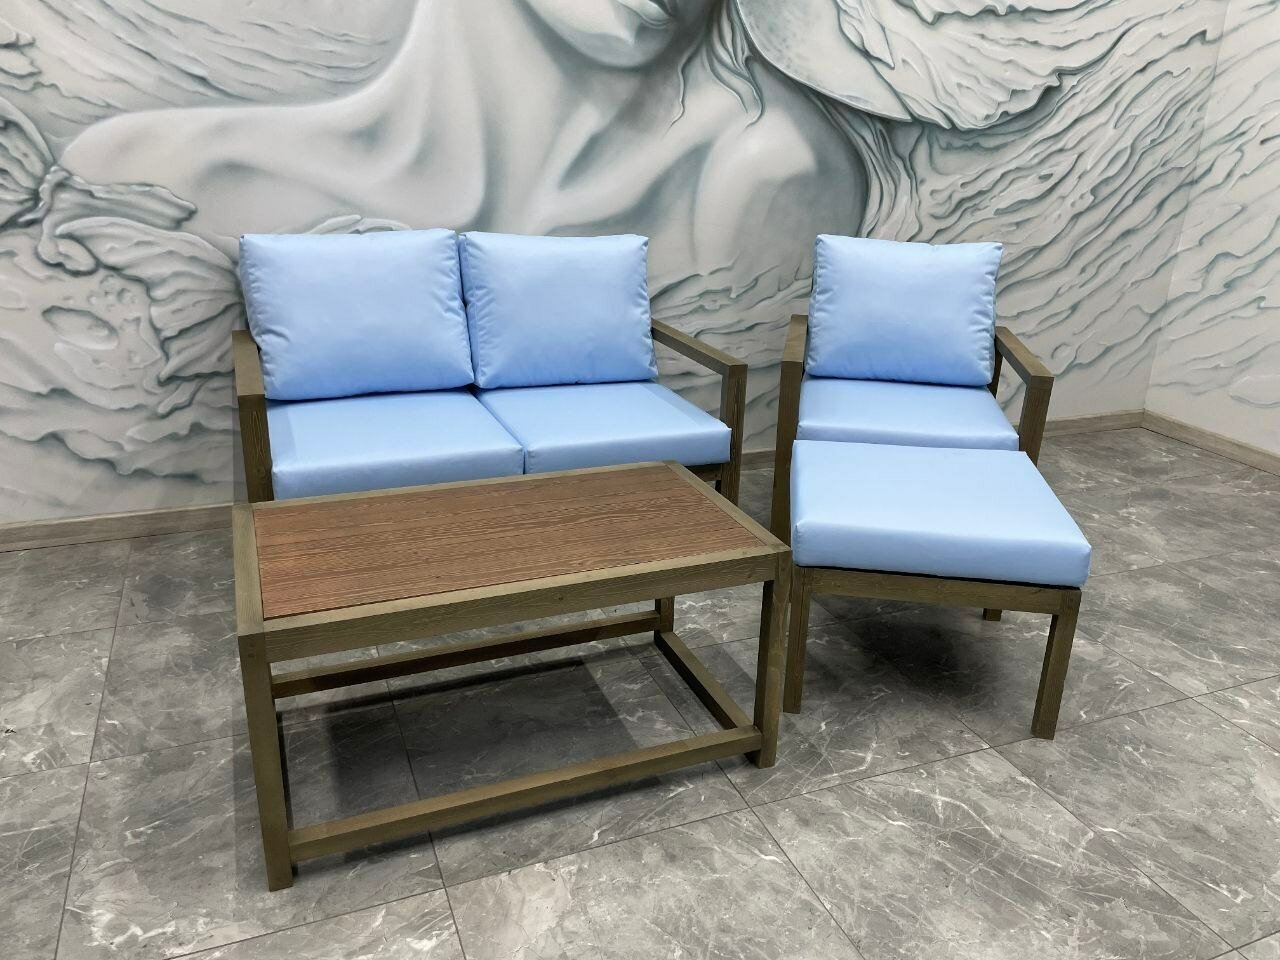 Комплект садовой мебели (диван, кресло, стол, пуфик), цвет: голубой 2.0 - фотография № 1